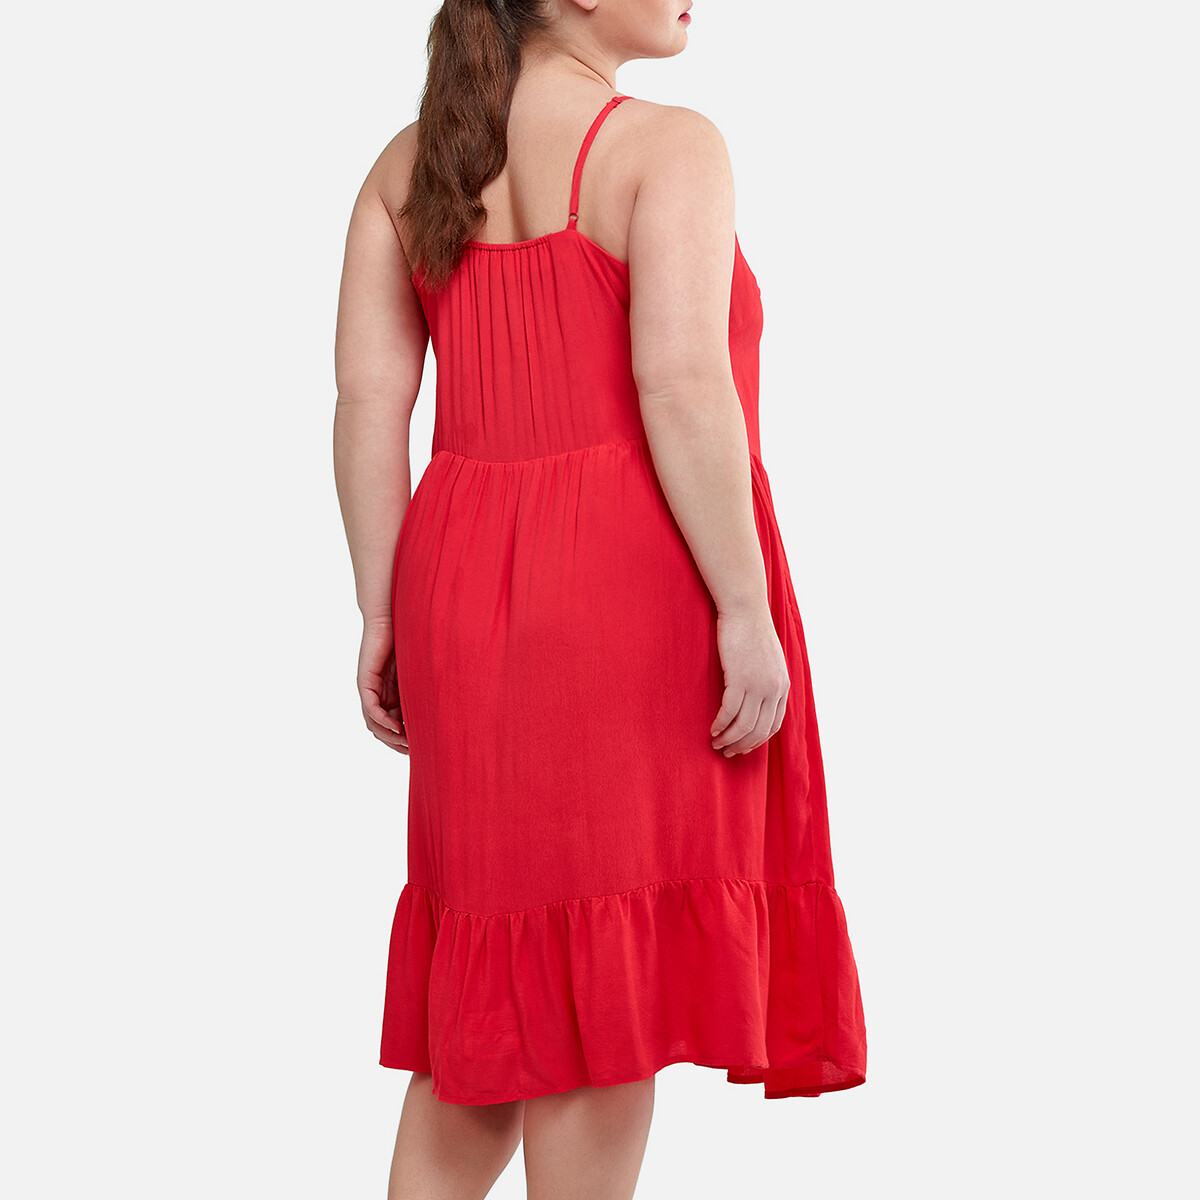 Платье La Redoute Короткое на тонких бретелях 54 (FR) - 60 (RUS) красный, размер 54 (FR) - 60 (RUS) Короткое на тонких бретелях 54 (FR) - 60 (RUS) красный - фото 4